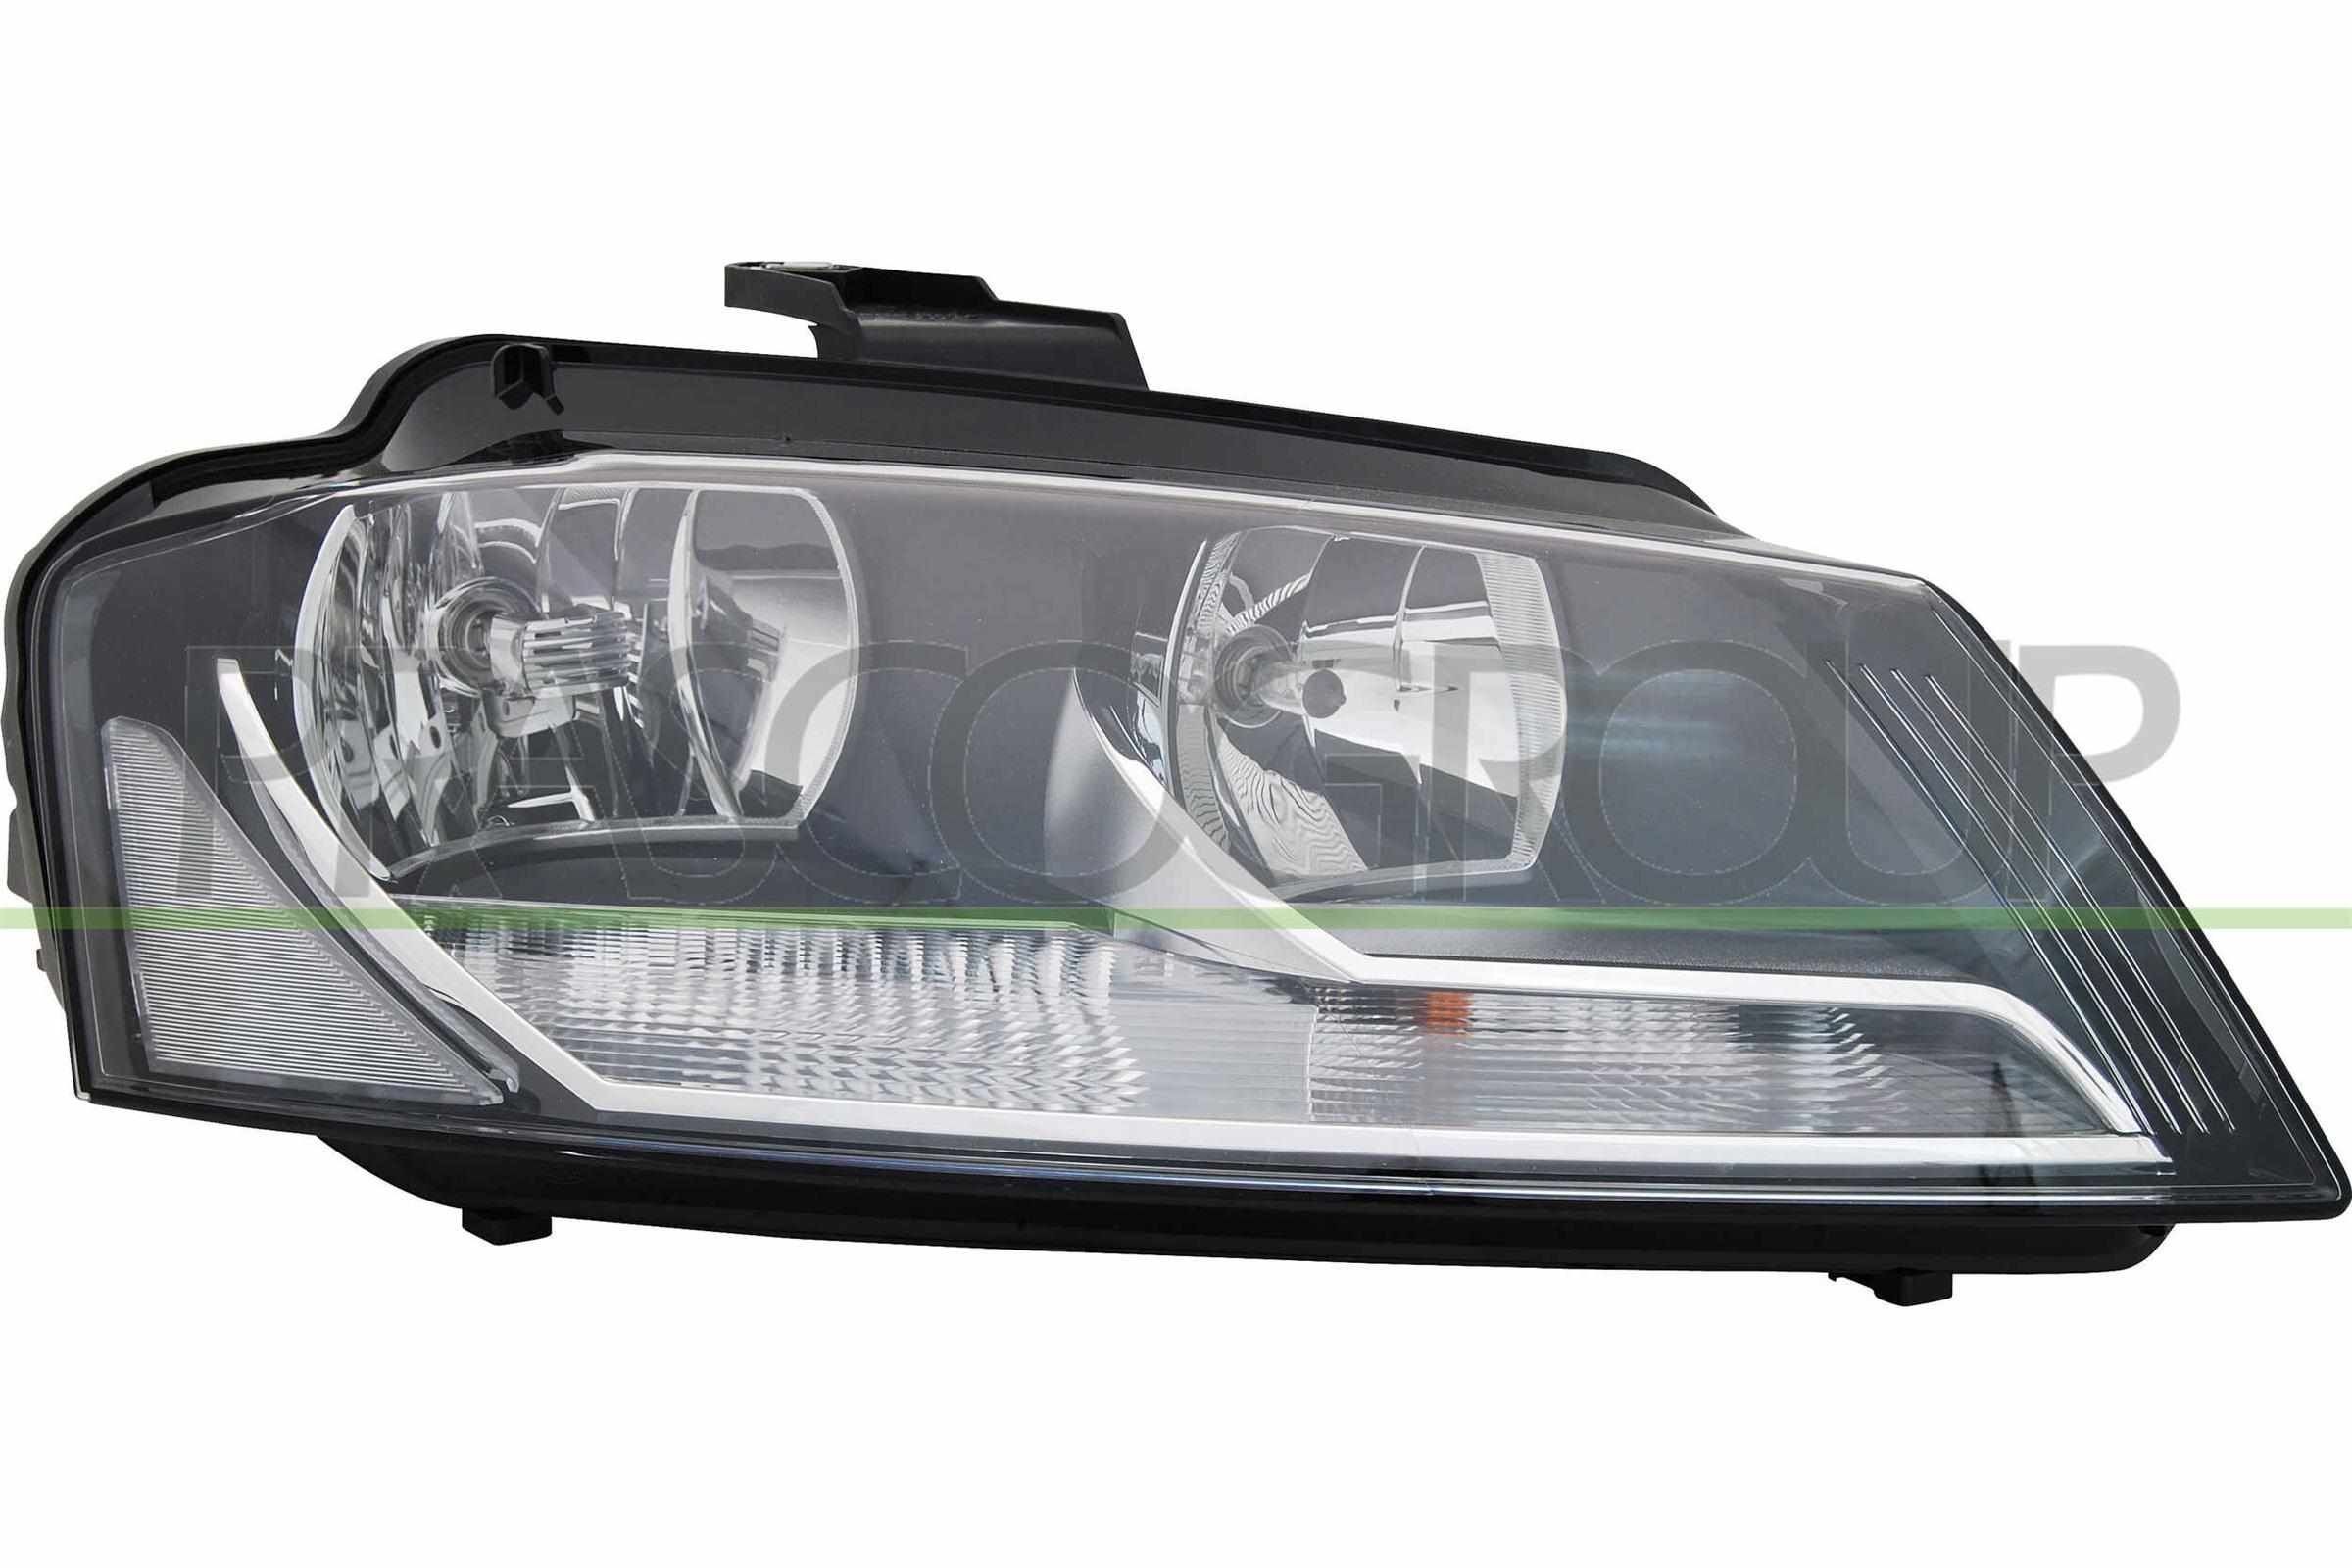 Scheinwerfer für Audi A3 8P LED und Xenon Benzin, Diesel, Ethanol kaufen -  Original Qualität und günstige Preise bei AUTODOC